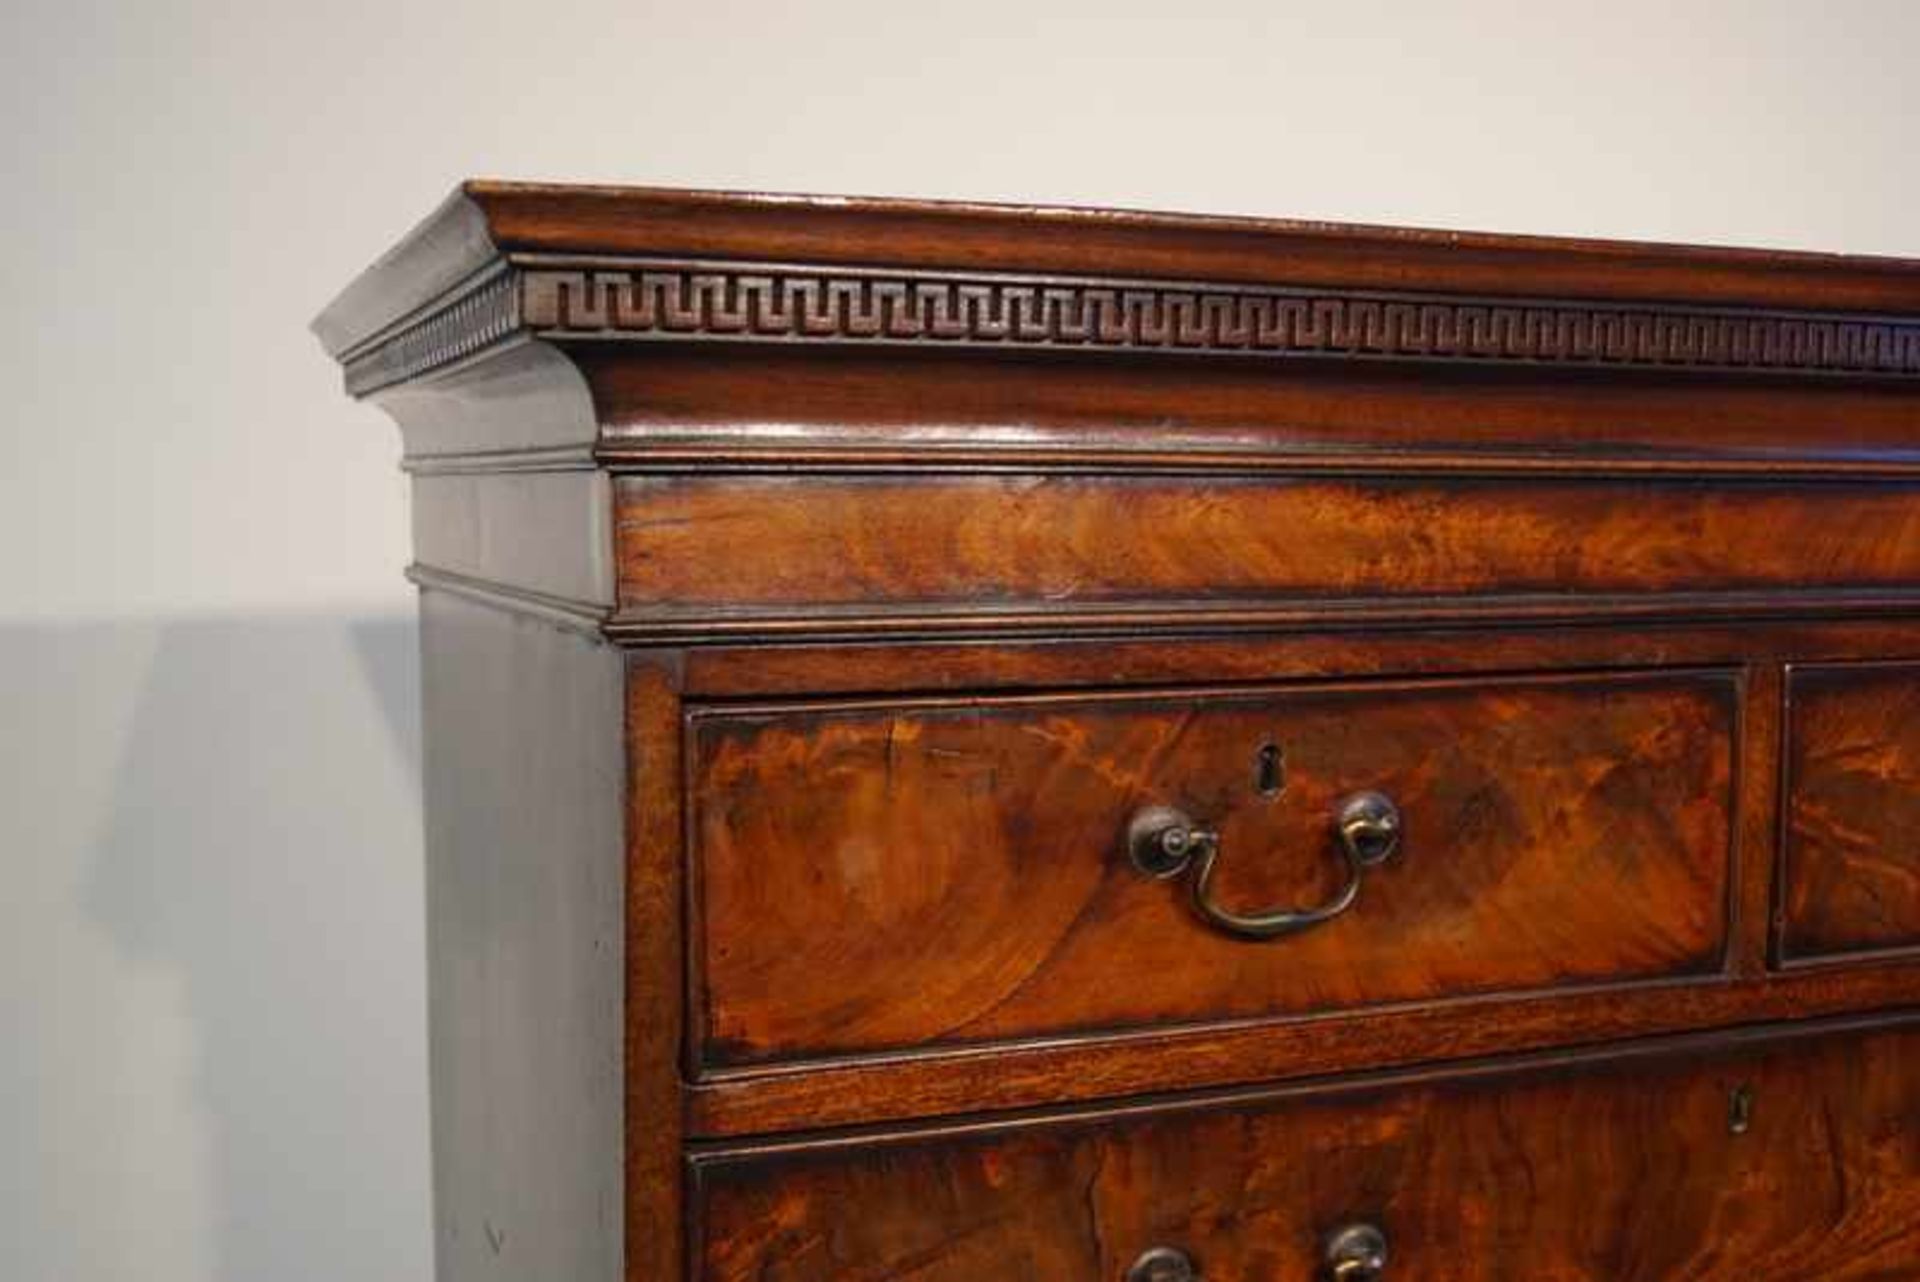 Englischer Dresser, George III., Ende 18.Jhd. - Image 2 of 2